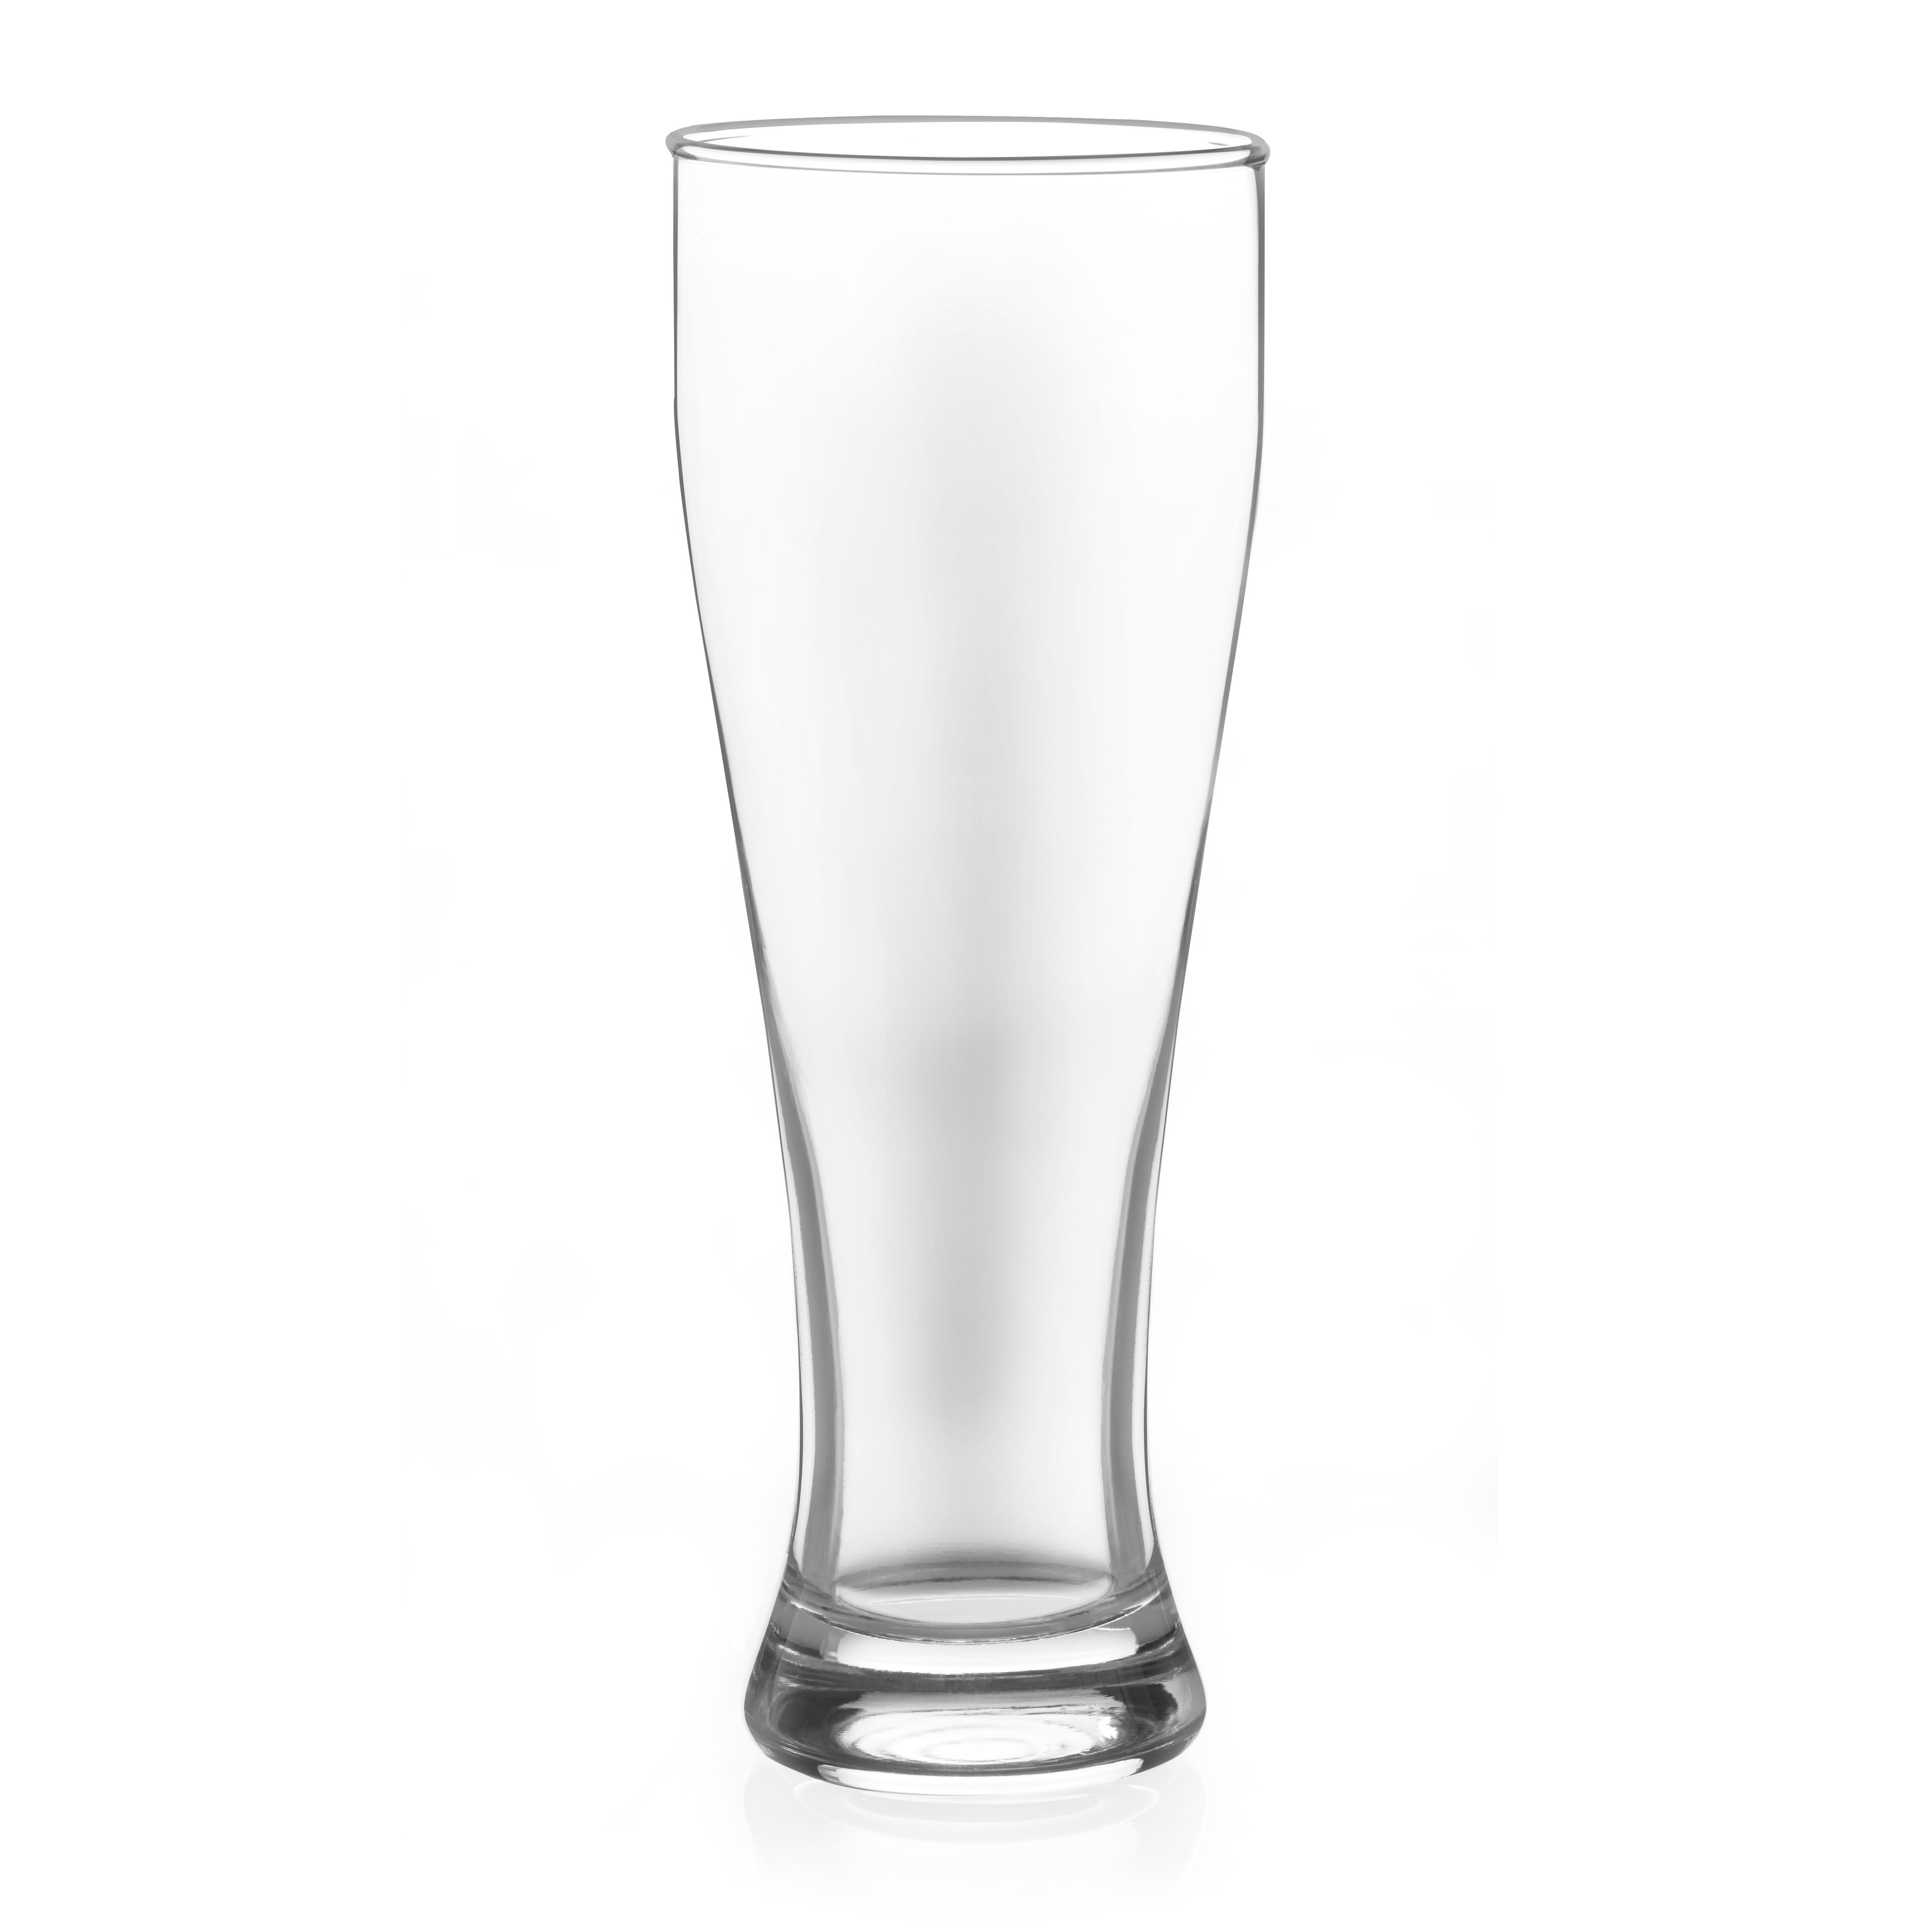 JoyJolt Callen 15.5 oz Beer Glasses Set of 4